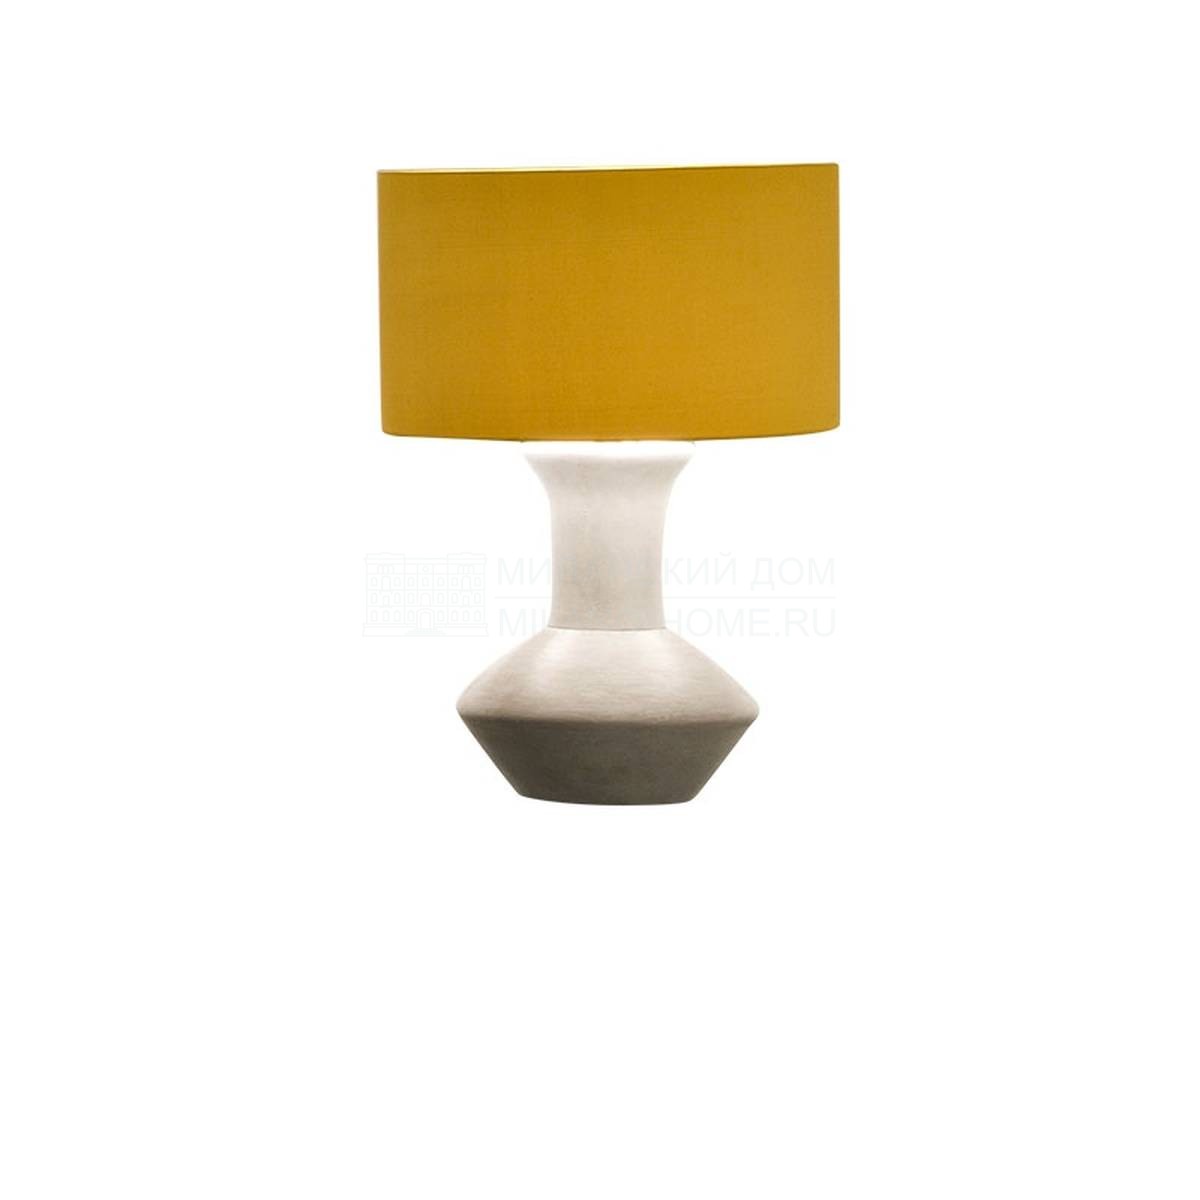 Настольная лампа Vico/ light из Италии фабрики SOFTHOUSE